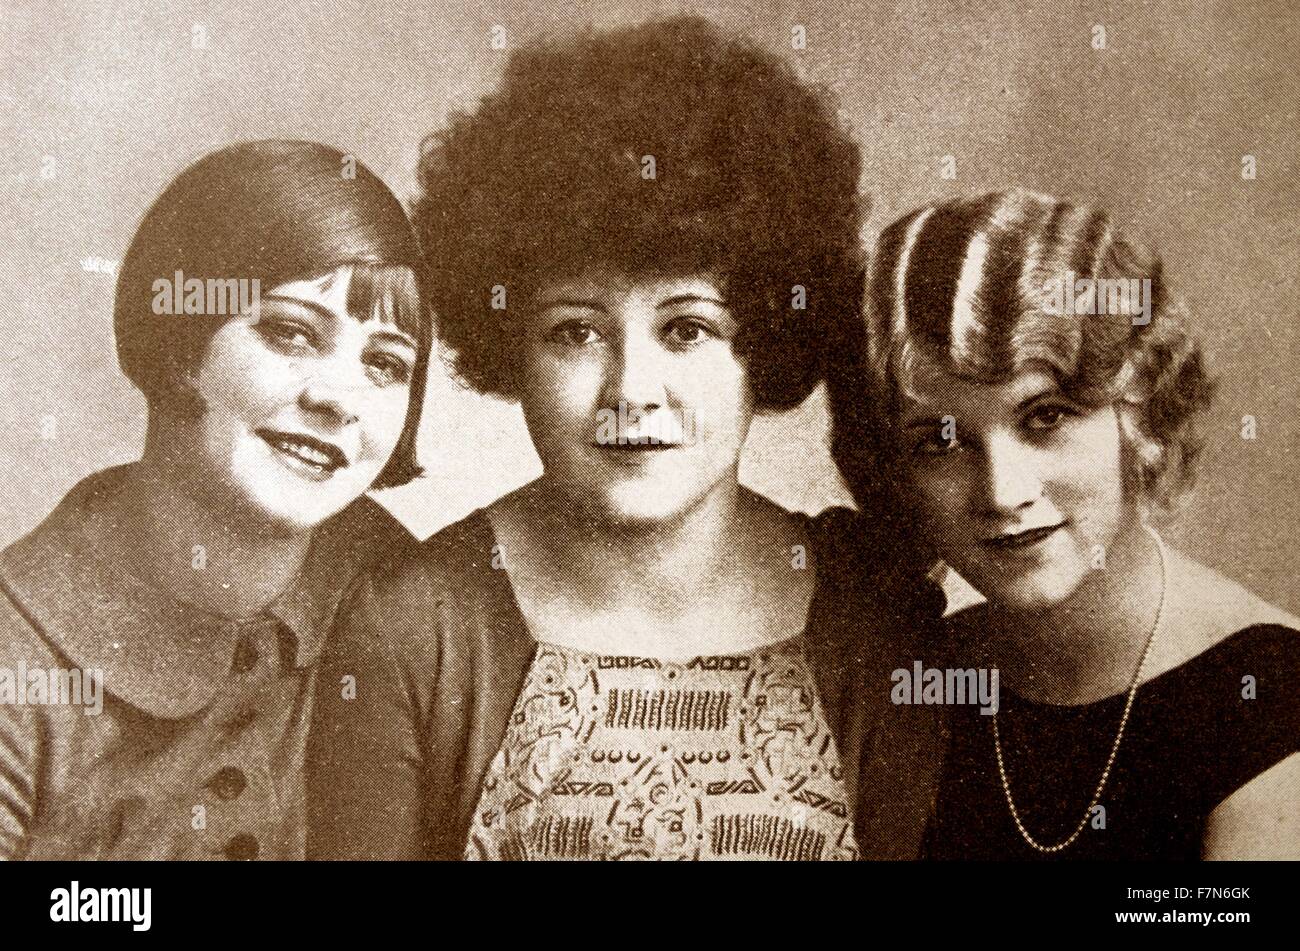 Bien que ces trois styles très différents semblent comiques, elles étaient considérées comme chic dans les années 20 quand les cheveux courts est devenu à la mode. Banque D'Images